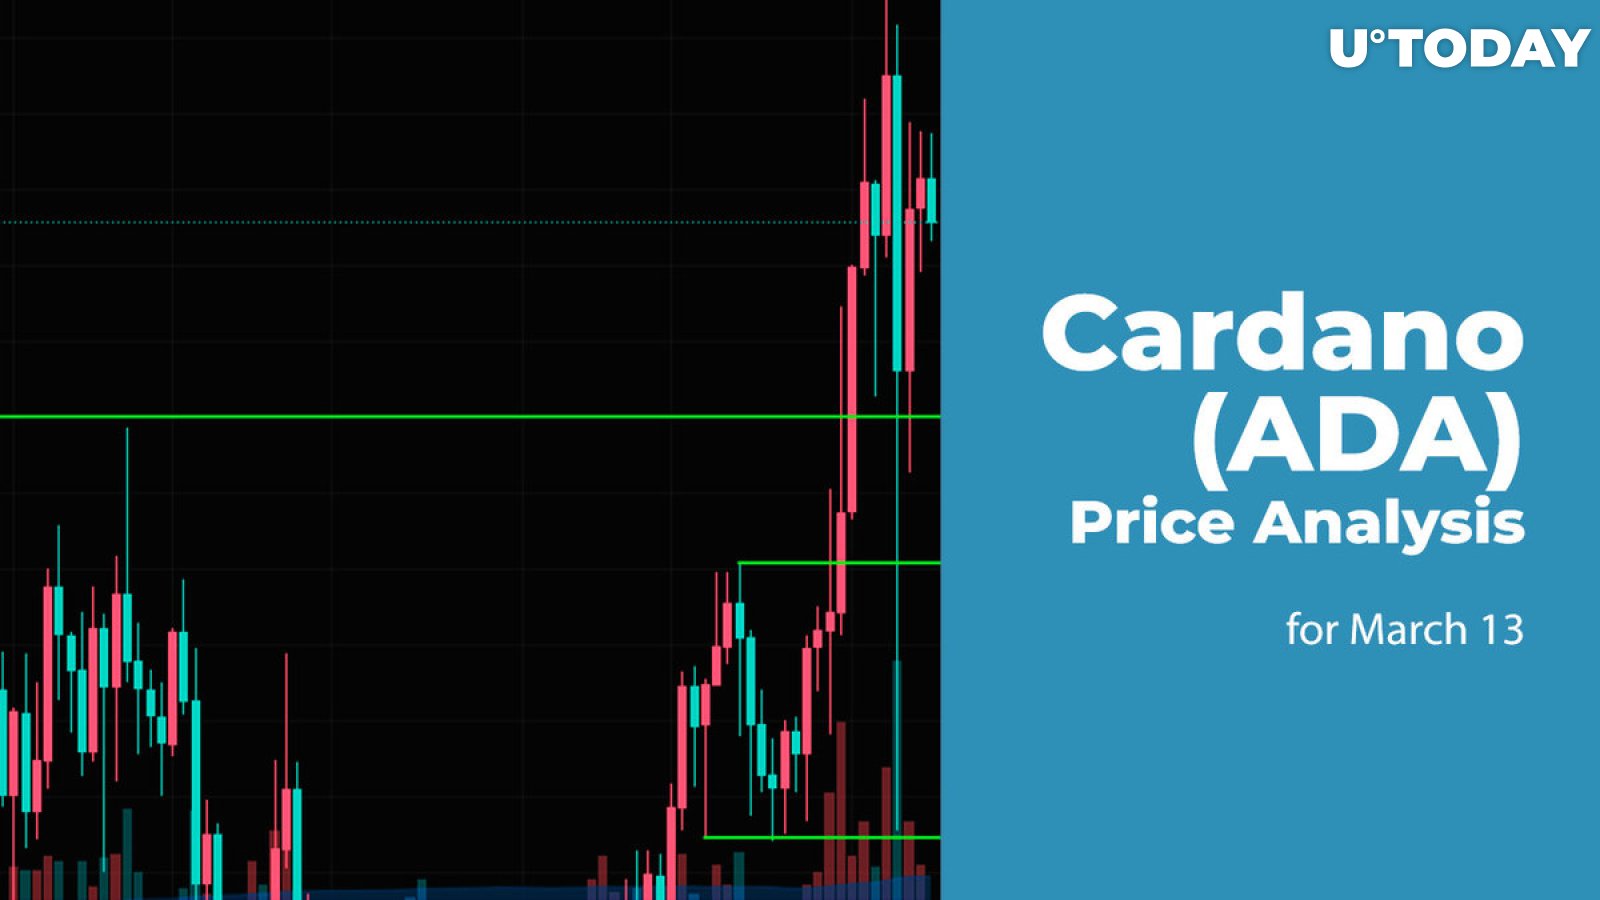 Cardano (ADA) Price Prediction for March 13